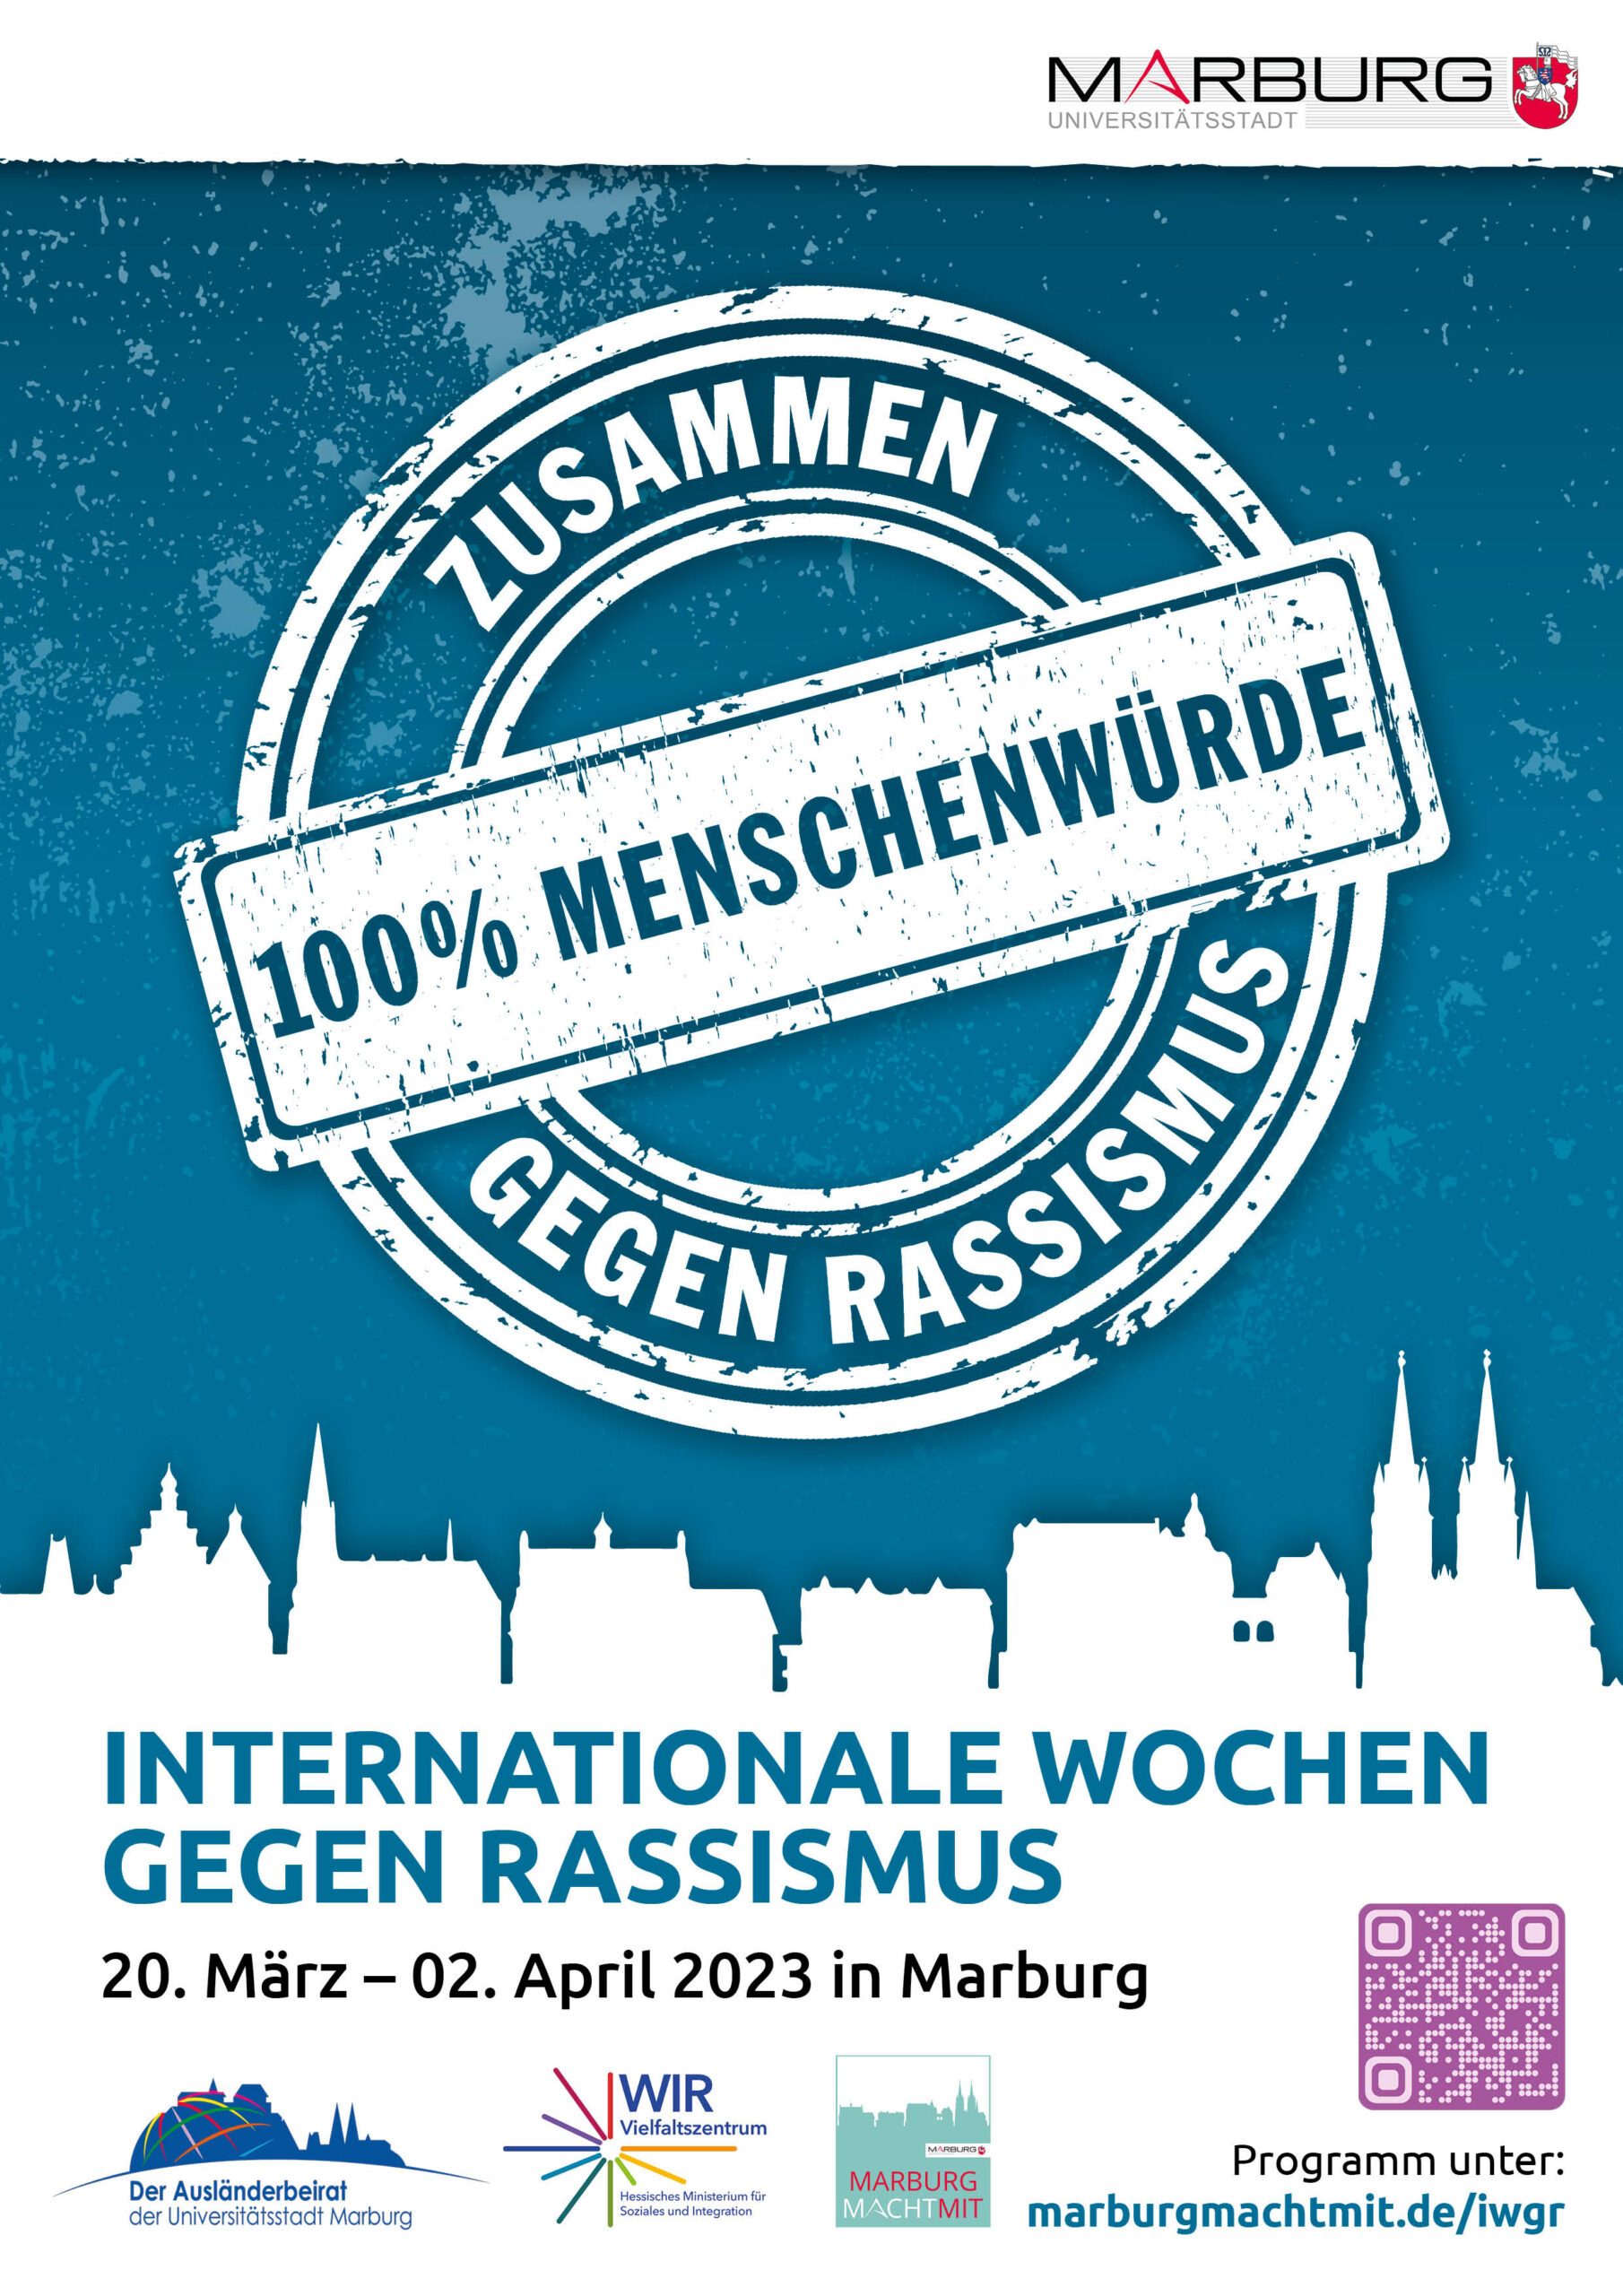 Internationale Wochen gegen Rassismus in Marburg